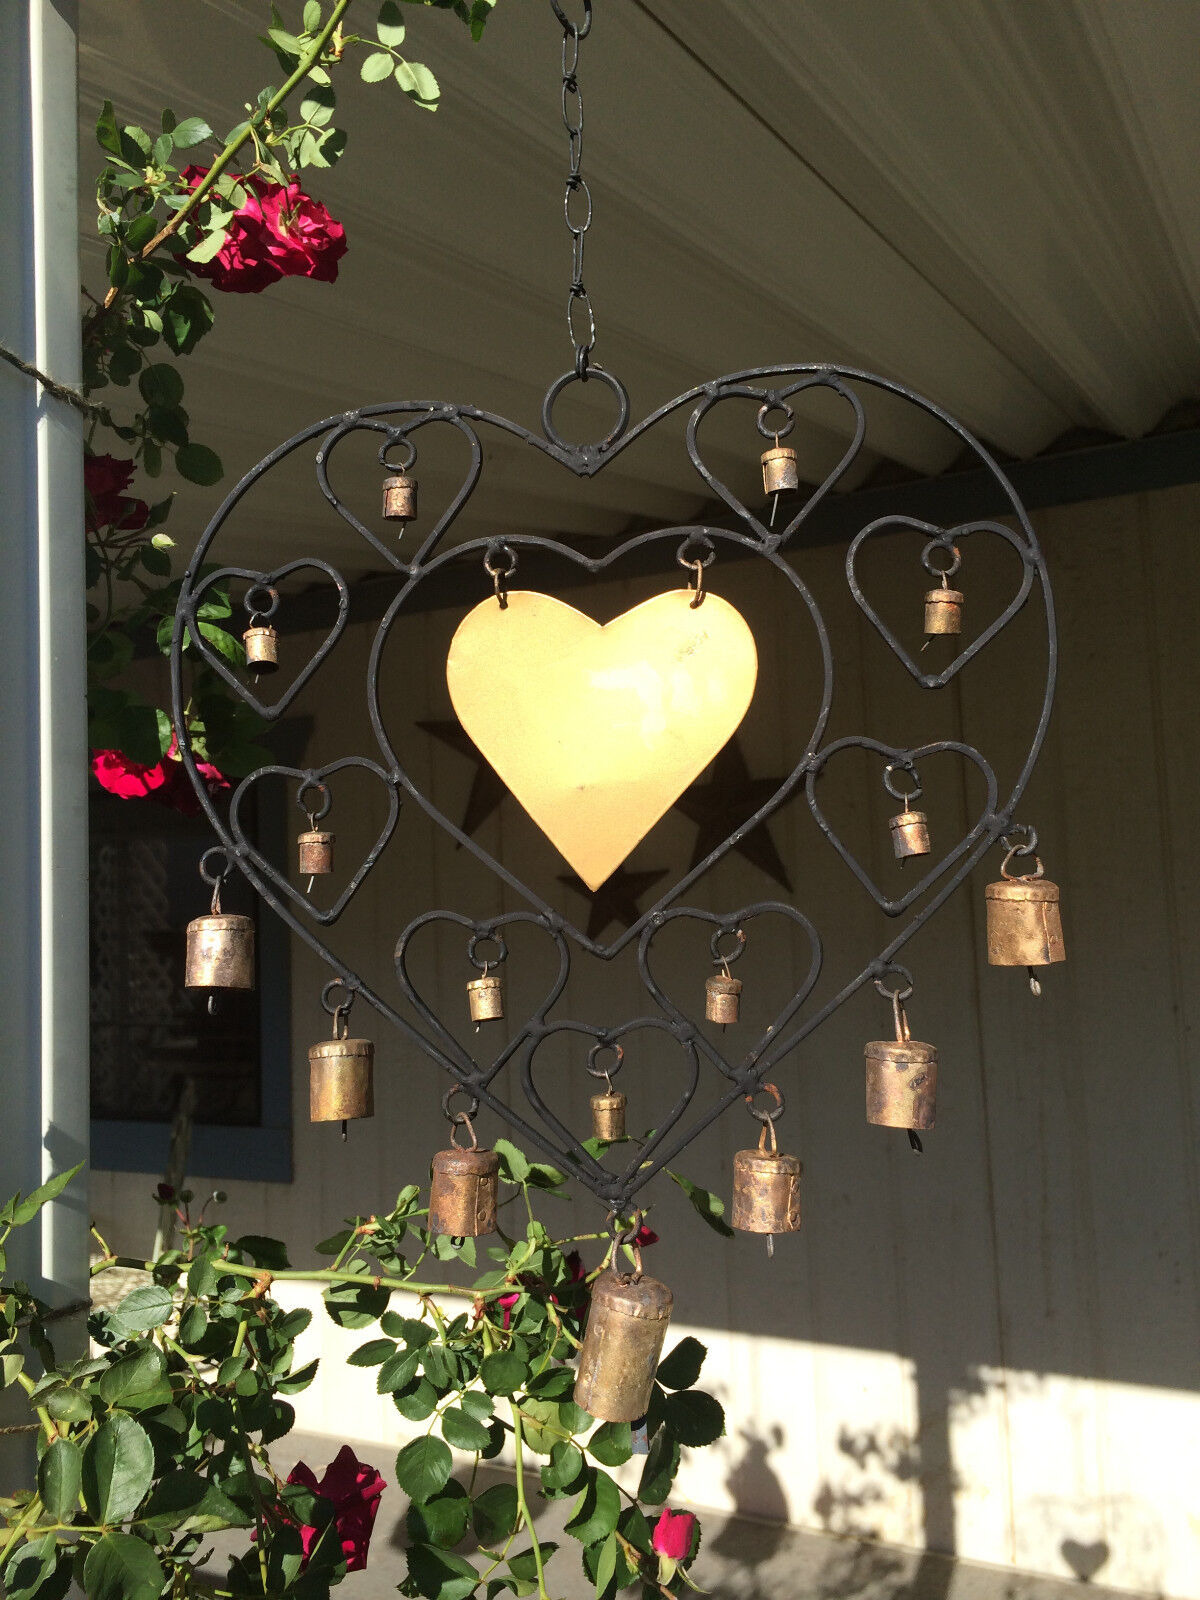 Large Iron Heart Windchime Recycled Metal Rustic Bells Garden Indoor Outdoor